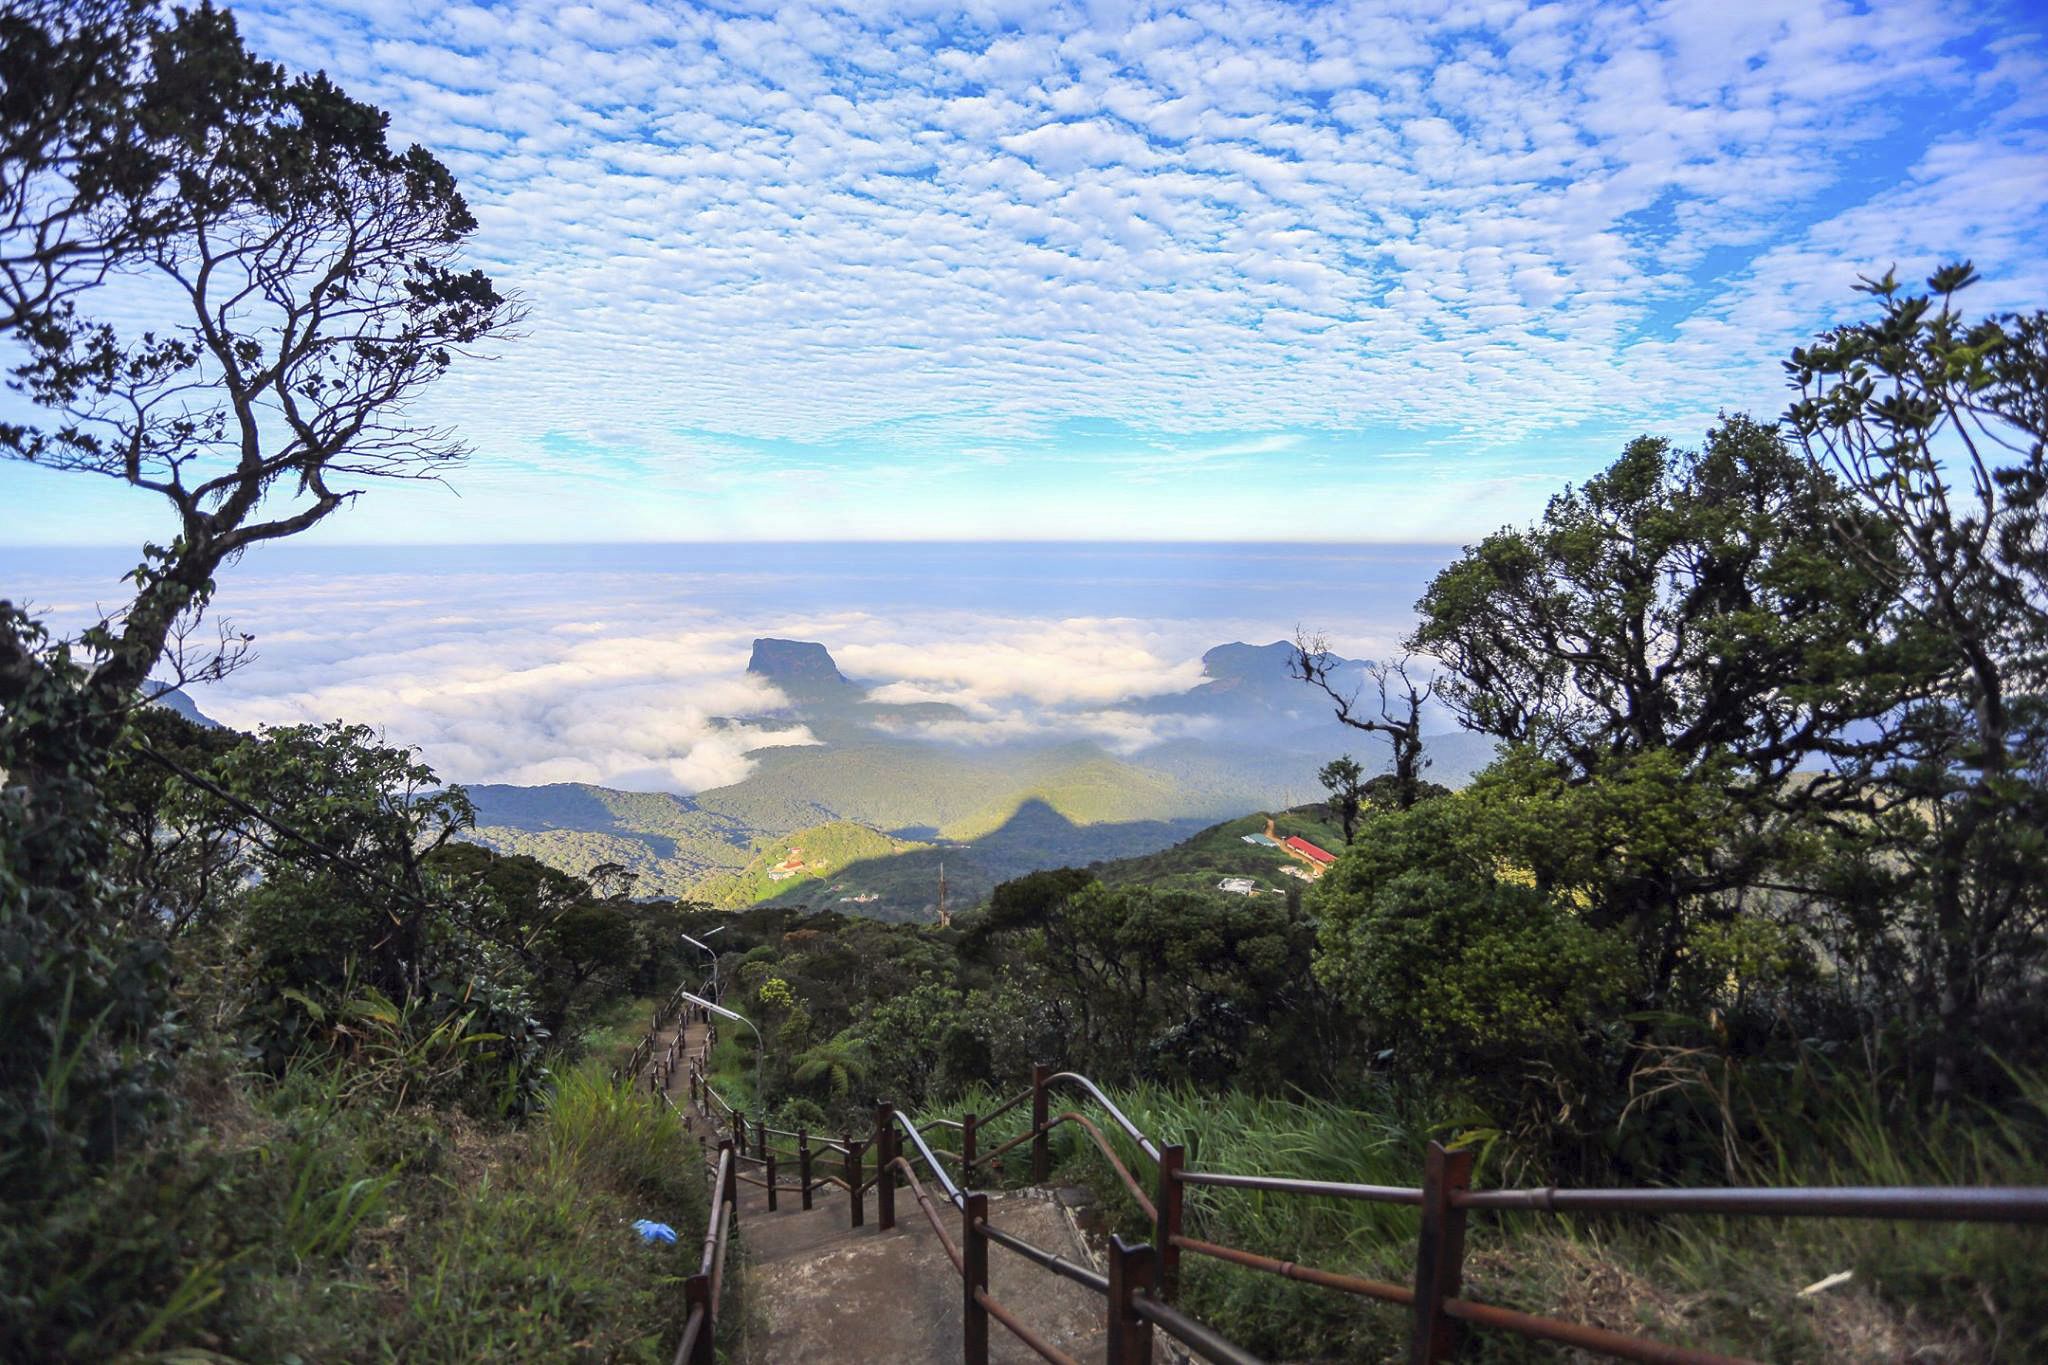 Home Istock Sri Lanka Nuwara Eliya little england uitzicht view dalhousie trekking Adams Peak